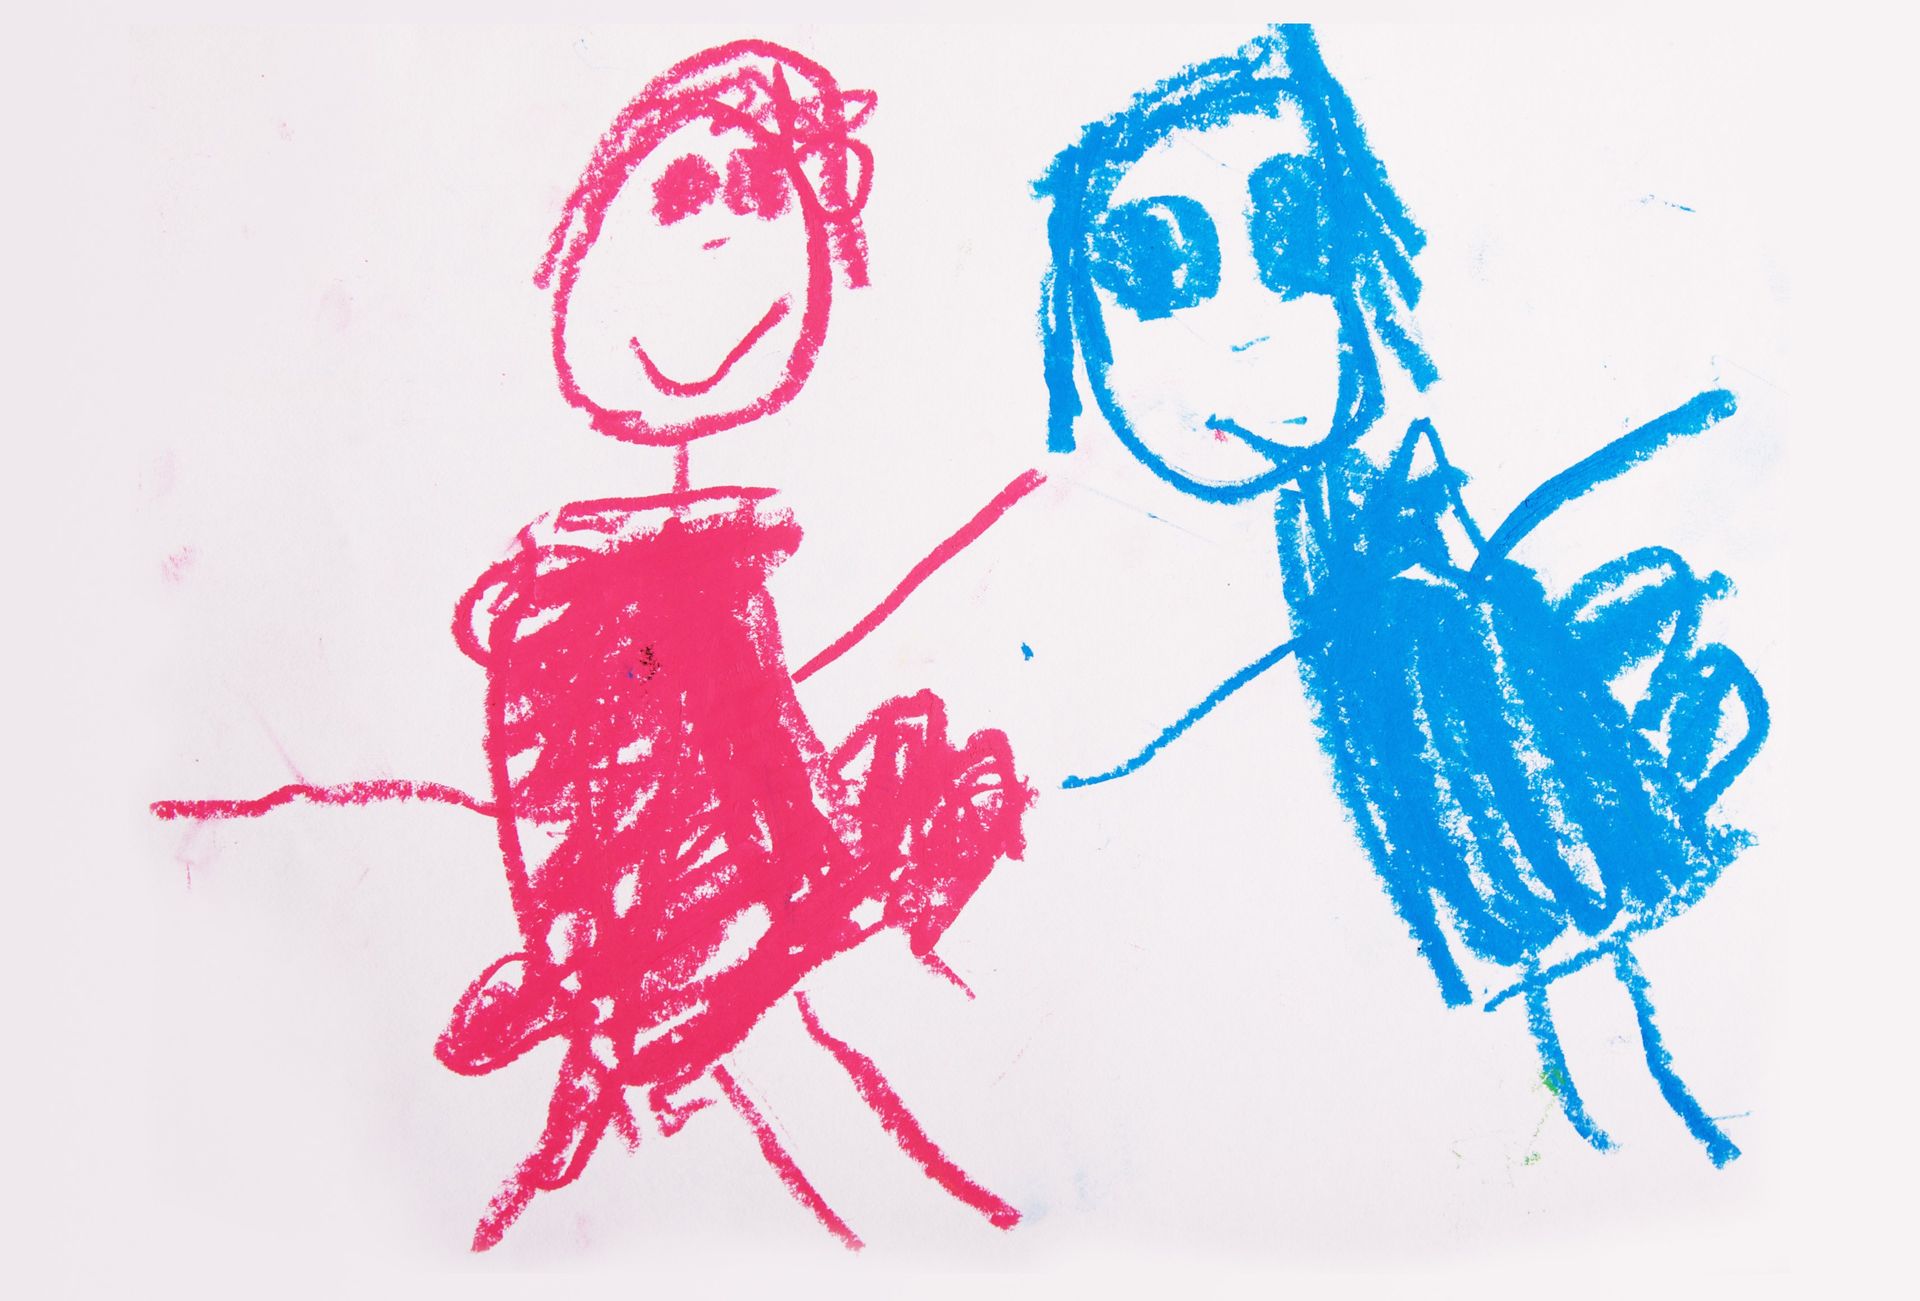 Crayon drawing of man and woman